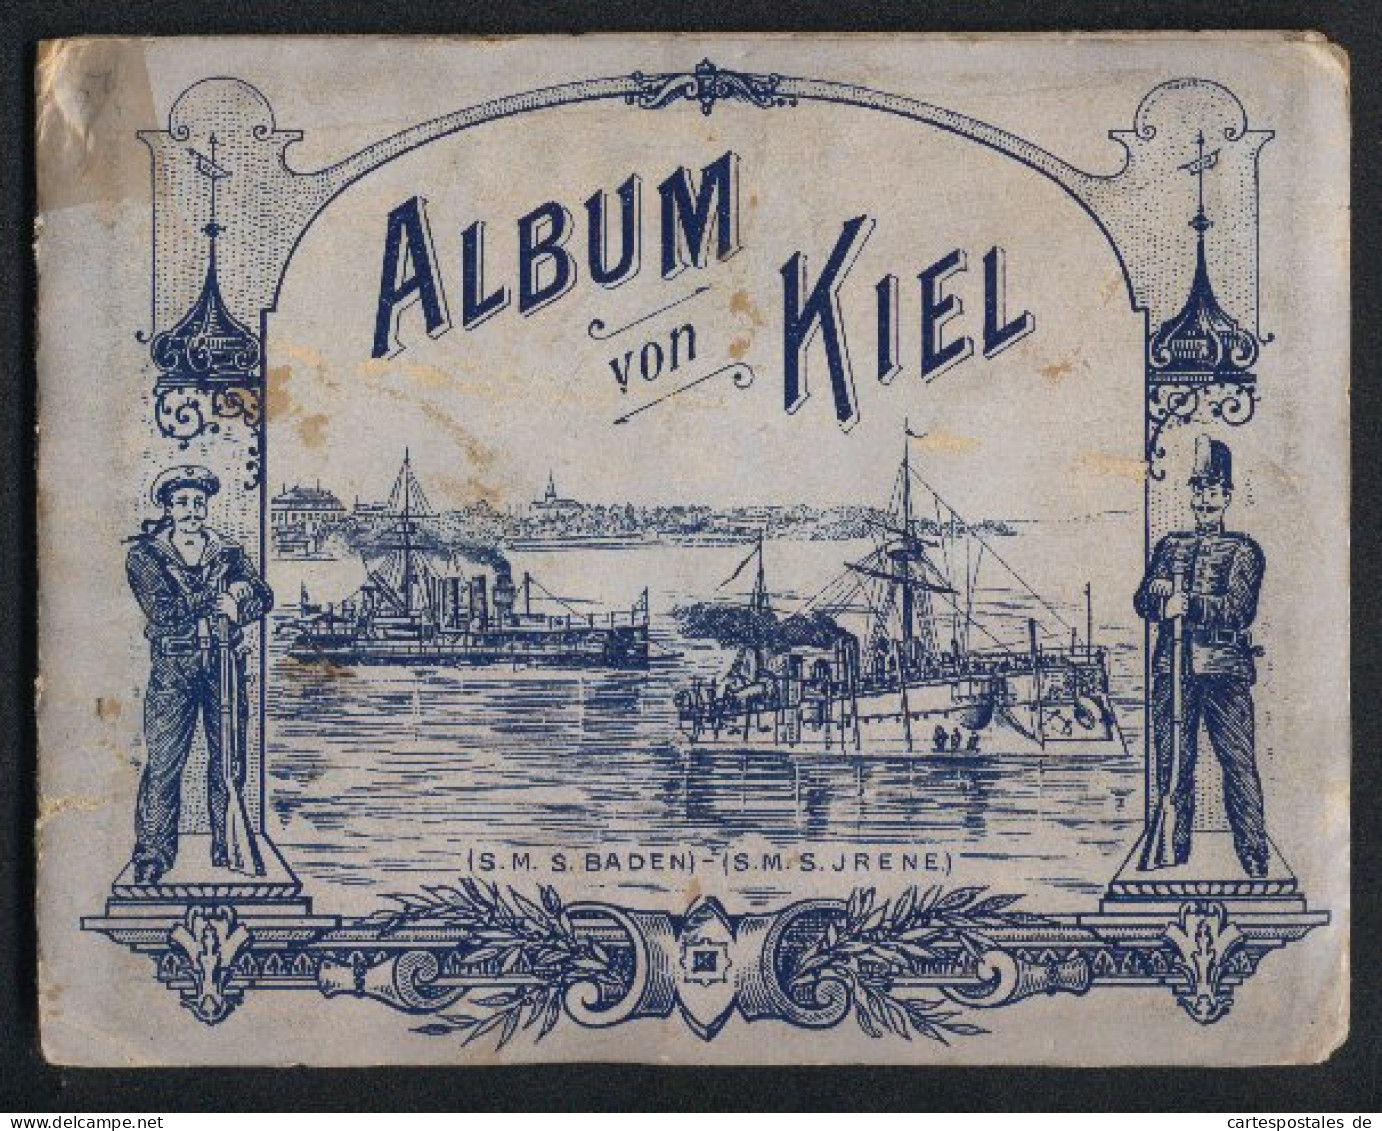 Leporello-Album Kiel Mit 13 Lithographie-Ansichten, Kaiserliche Werft, Panorama Mit Kriegshafen, Marine Akademie, Uni  - Lithographies